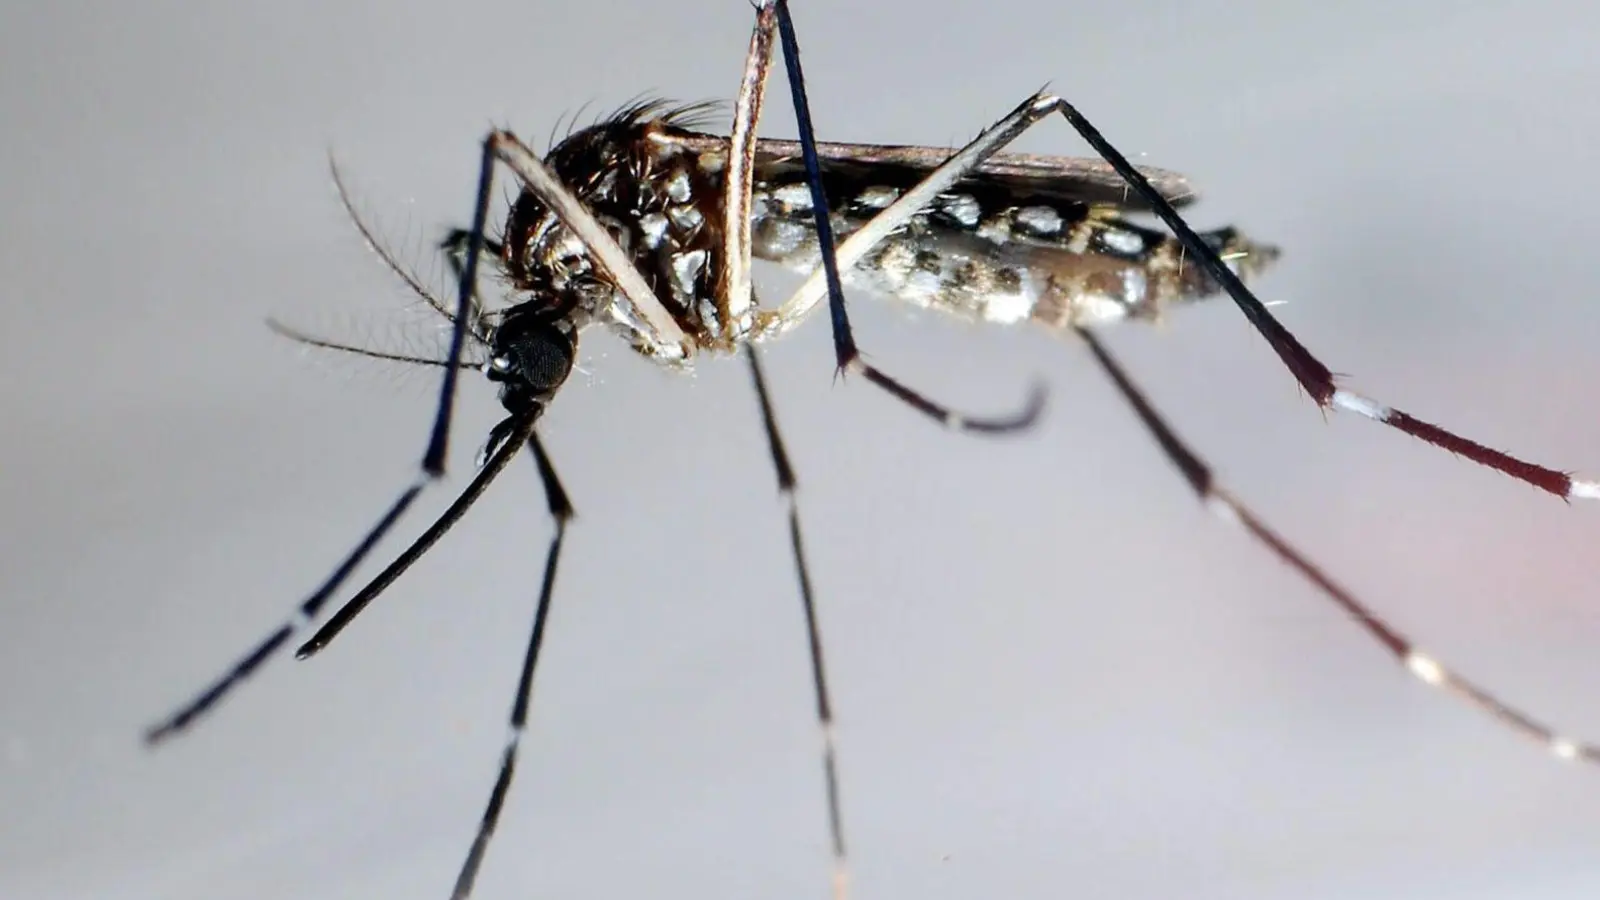 Stechmücke der Art „Aedes aegypti“ - auch „Stegomyia aegypti“: Die Gelbfiebermücke, Denguemücke oder Ägyptische Tigermücke überträgt verschiedene Krankheiten, darunter auch das Dengue-Fieber. (Foto: Gustavo Amador/epa/dpa)